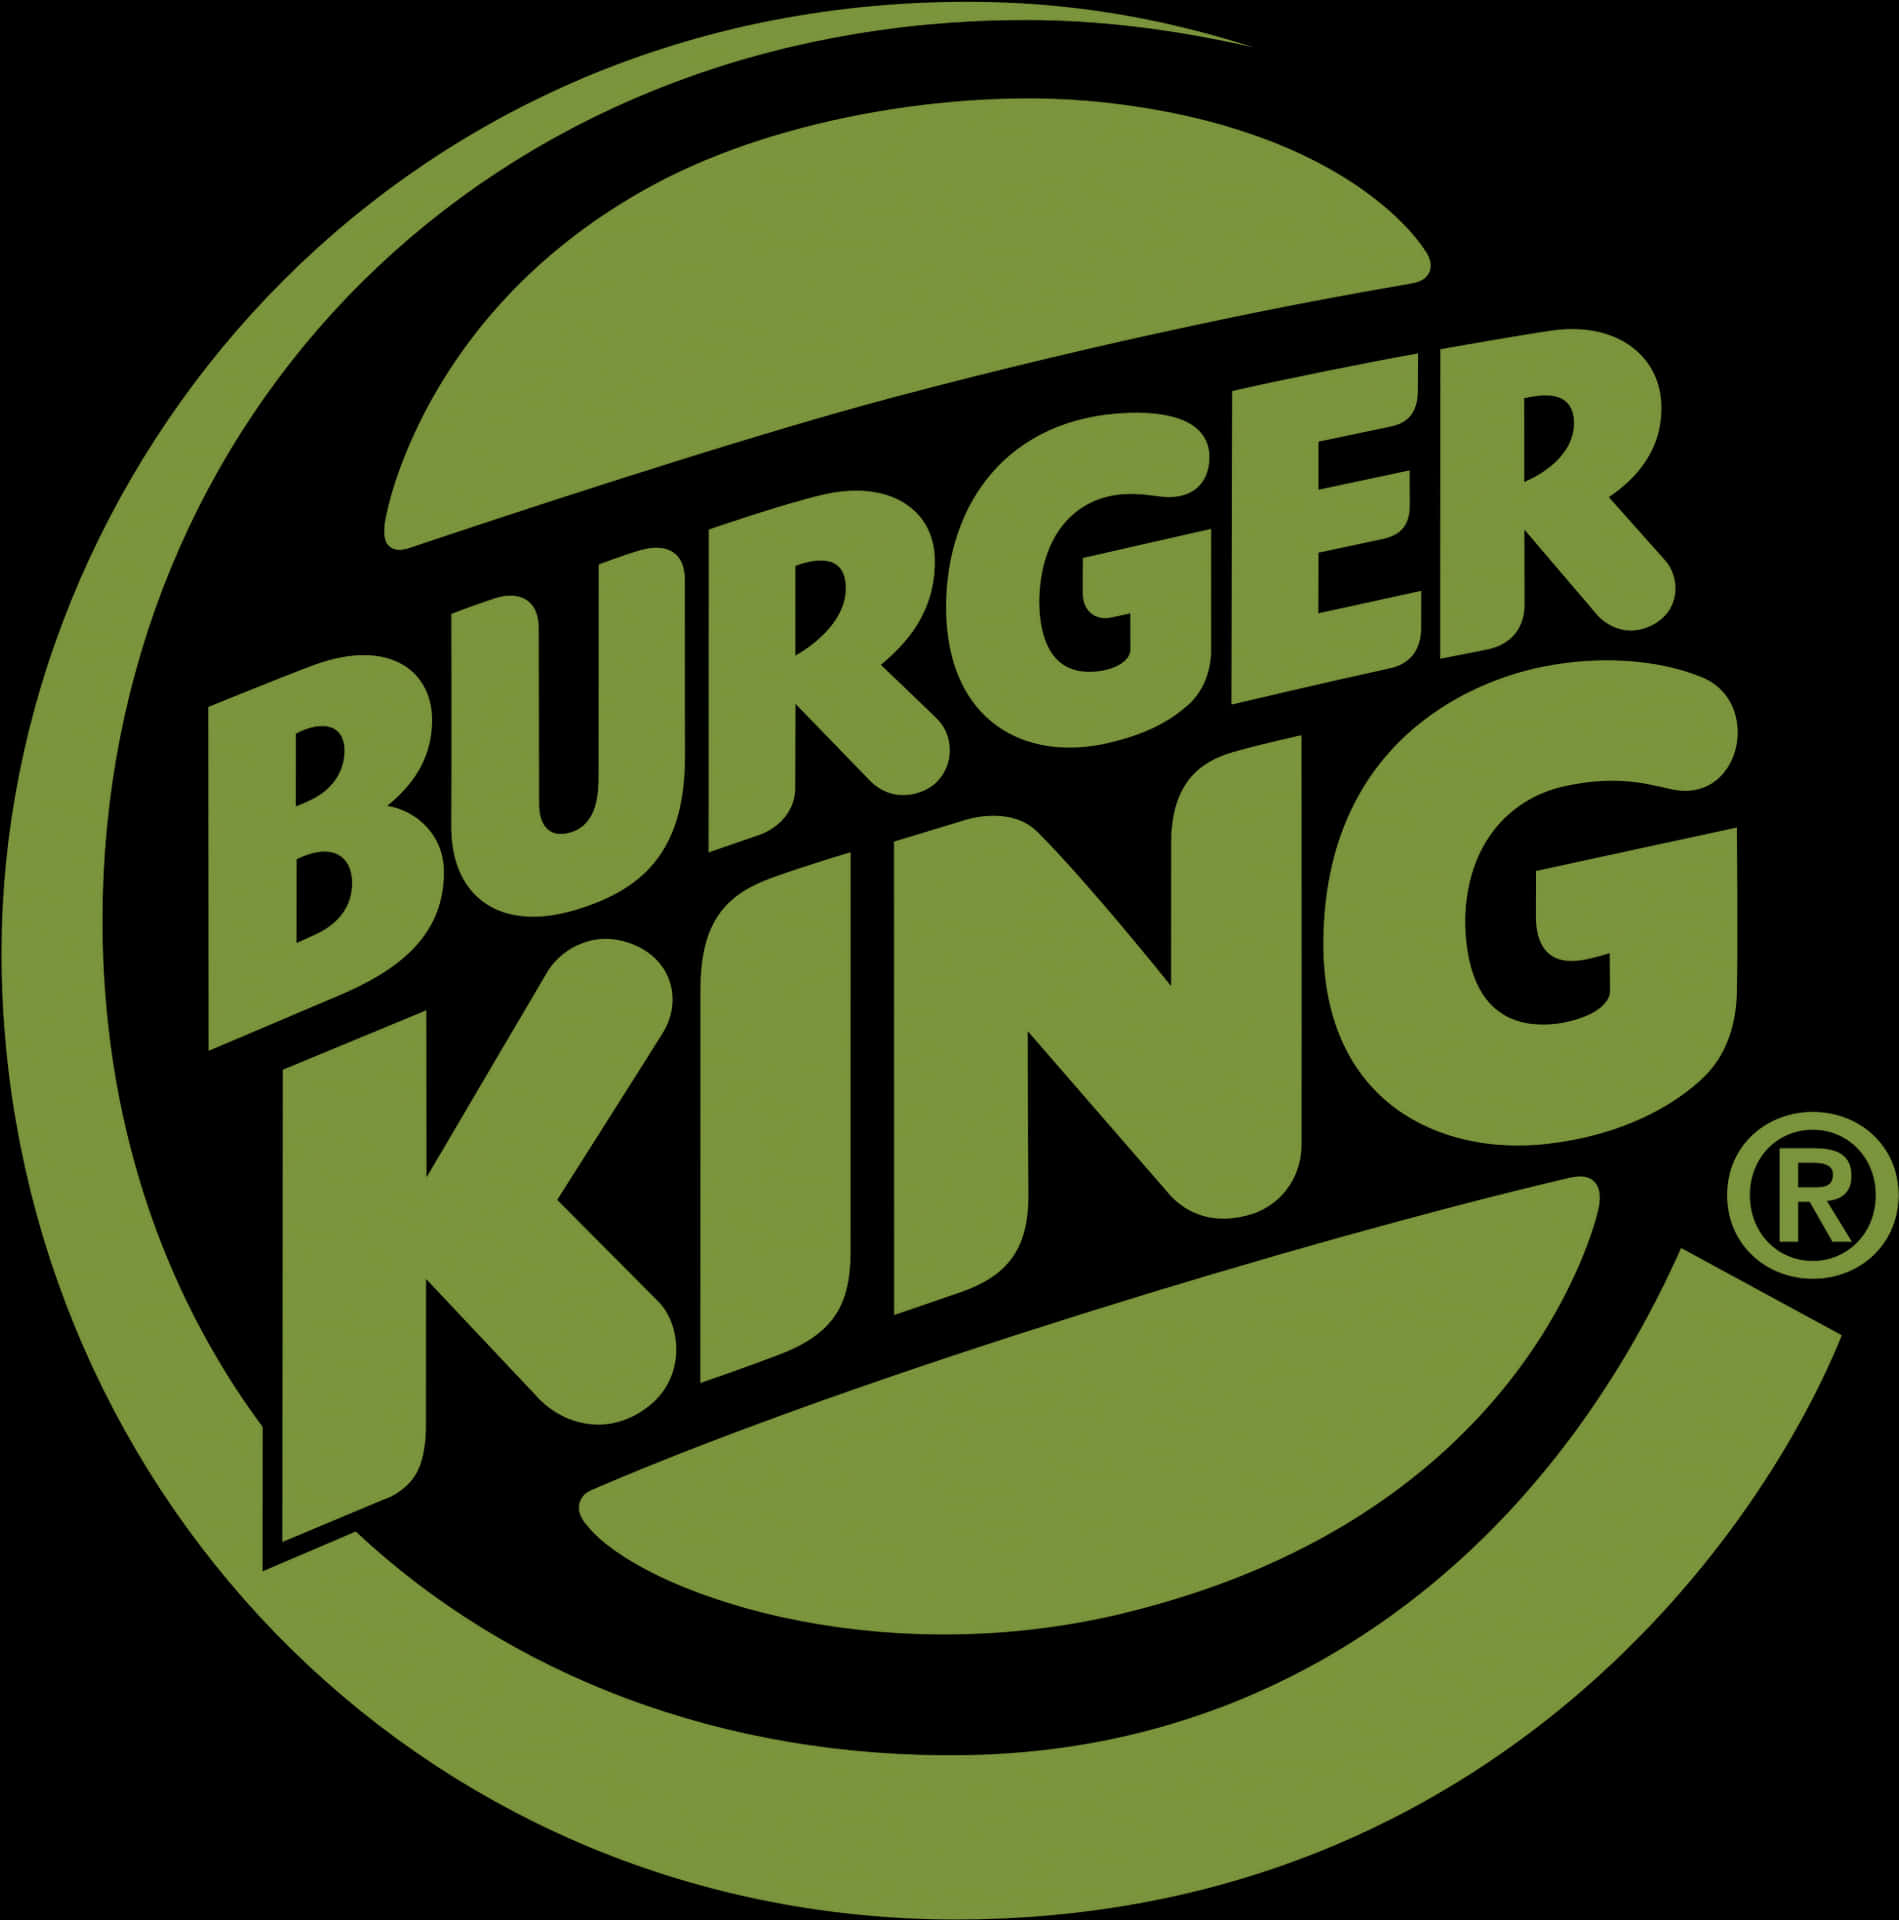 Soddisfale Tue Voglie Con La Deliziosa Selezione Di Cibi Di Burger King